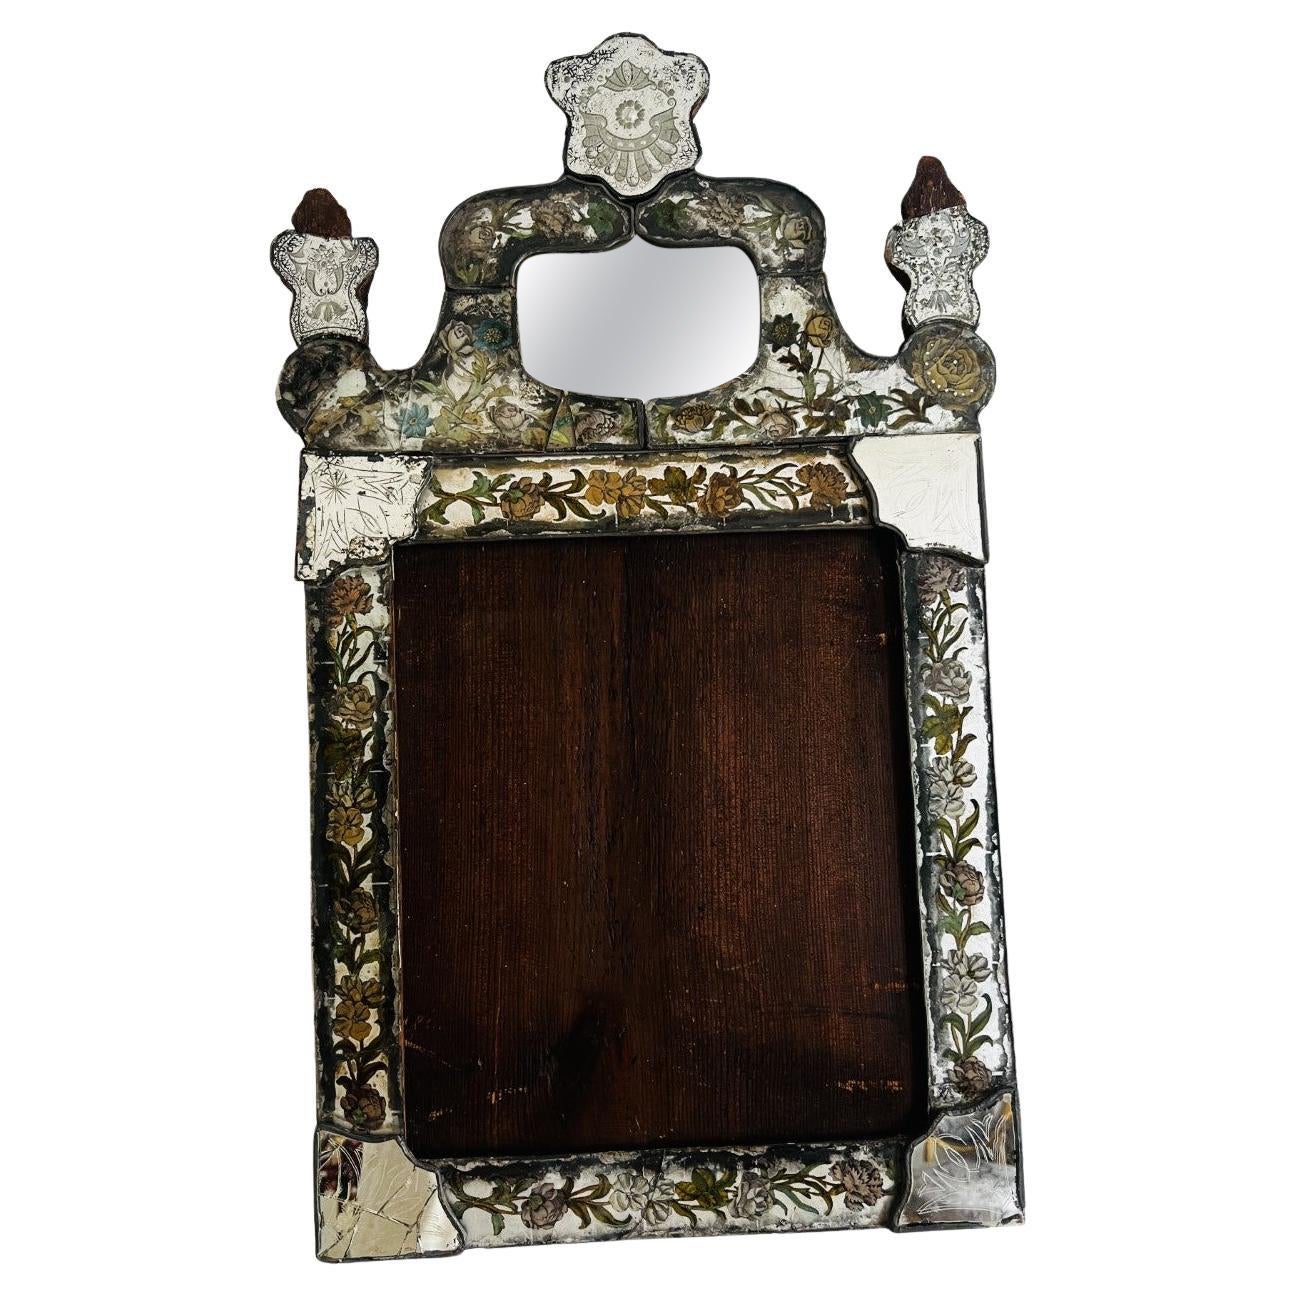 Rare miroir vénitien ancien du 17ème siècle